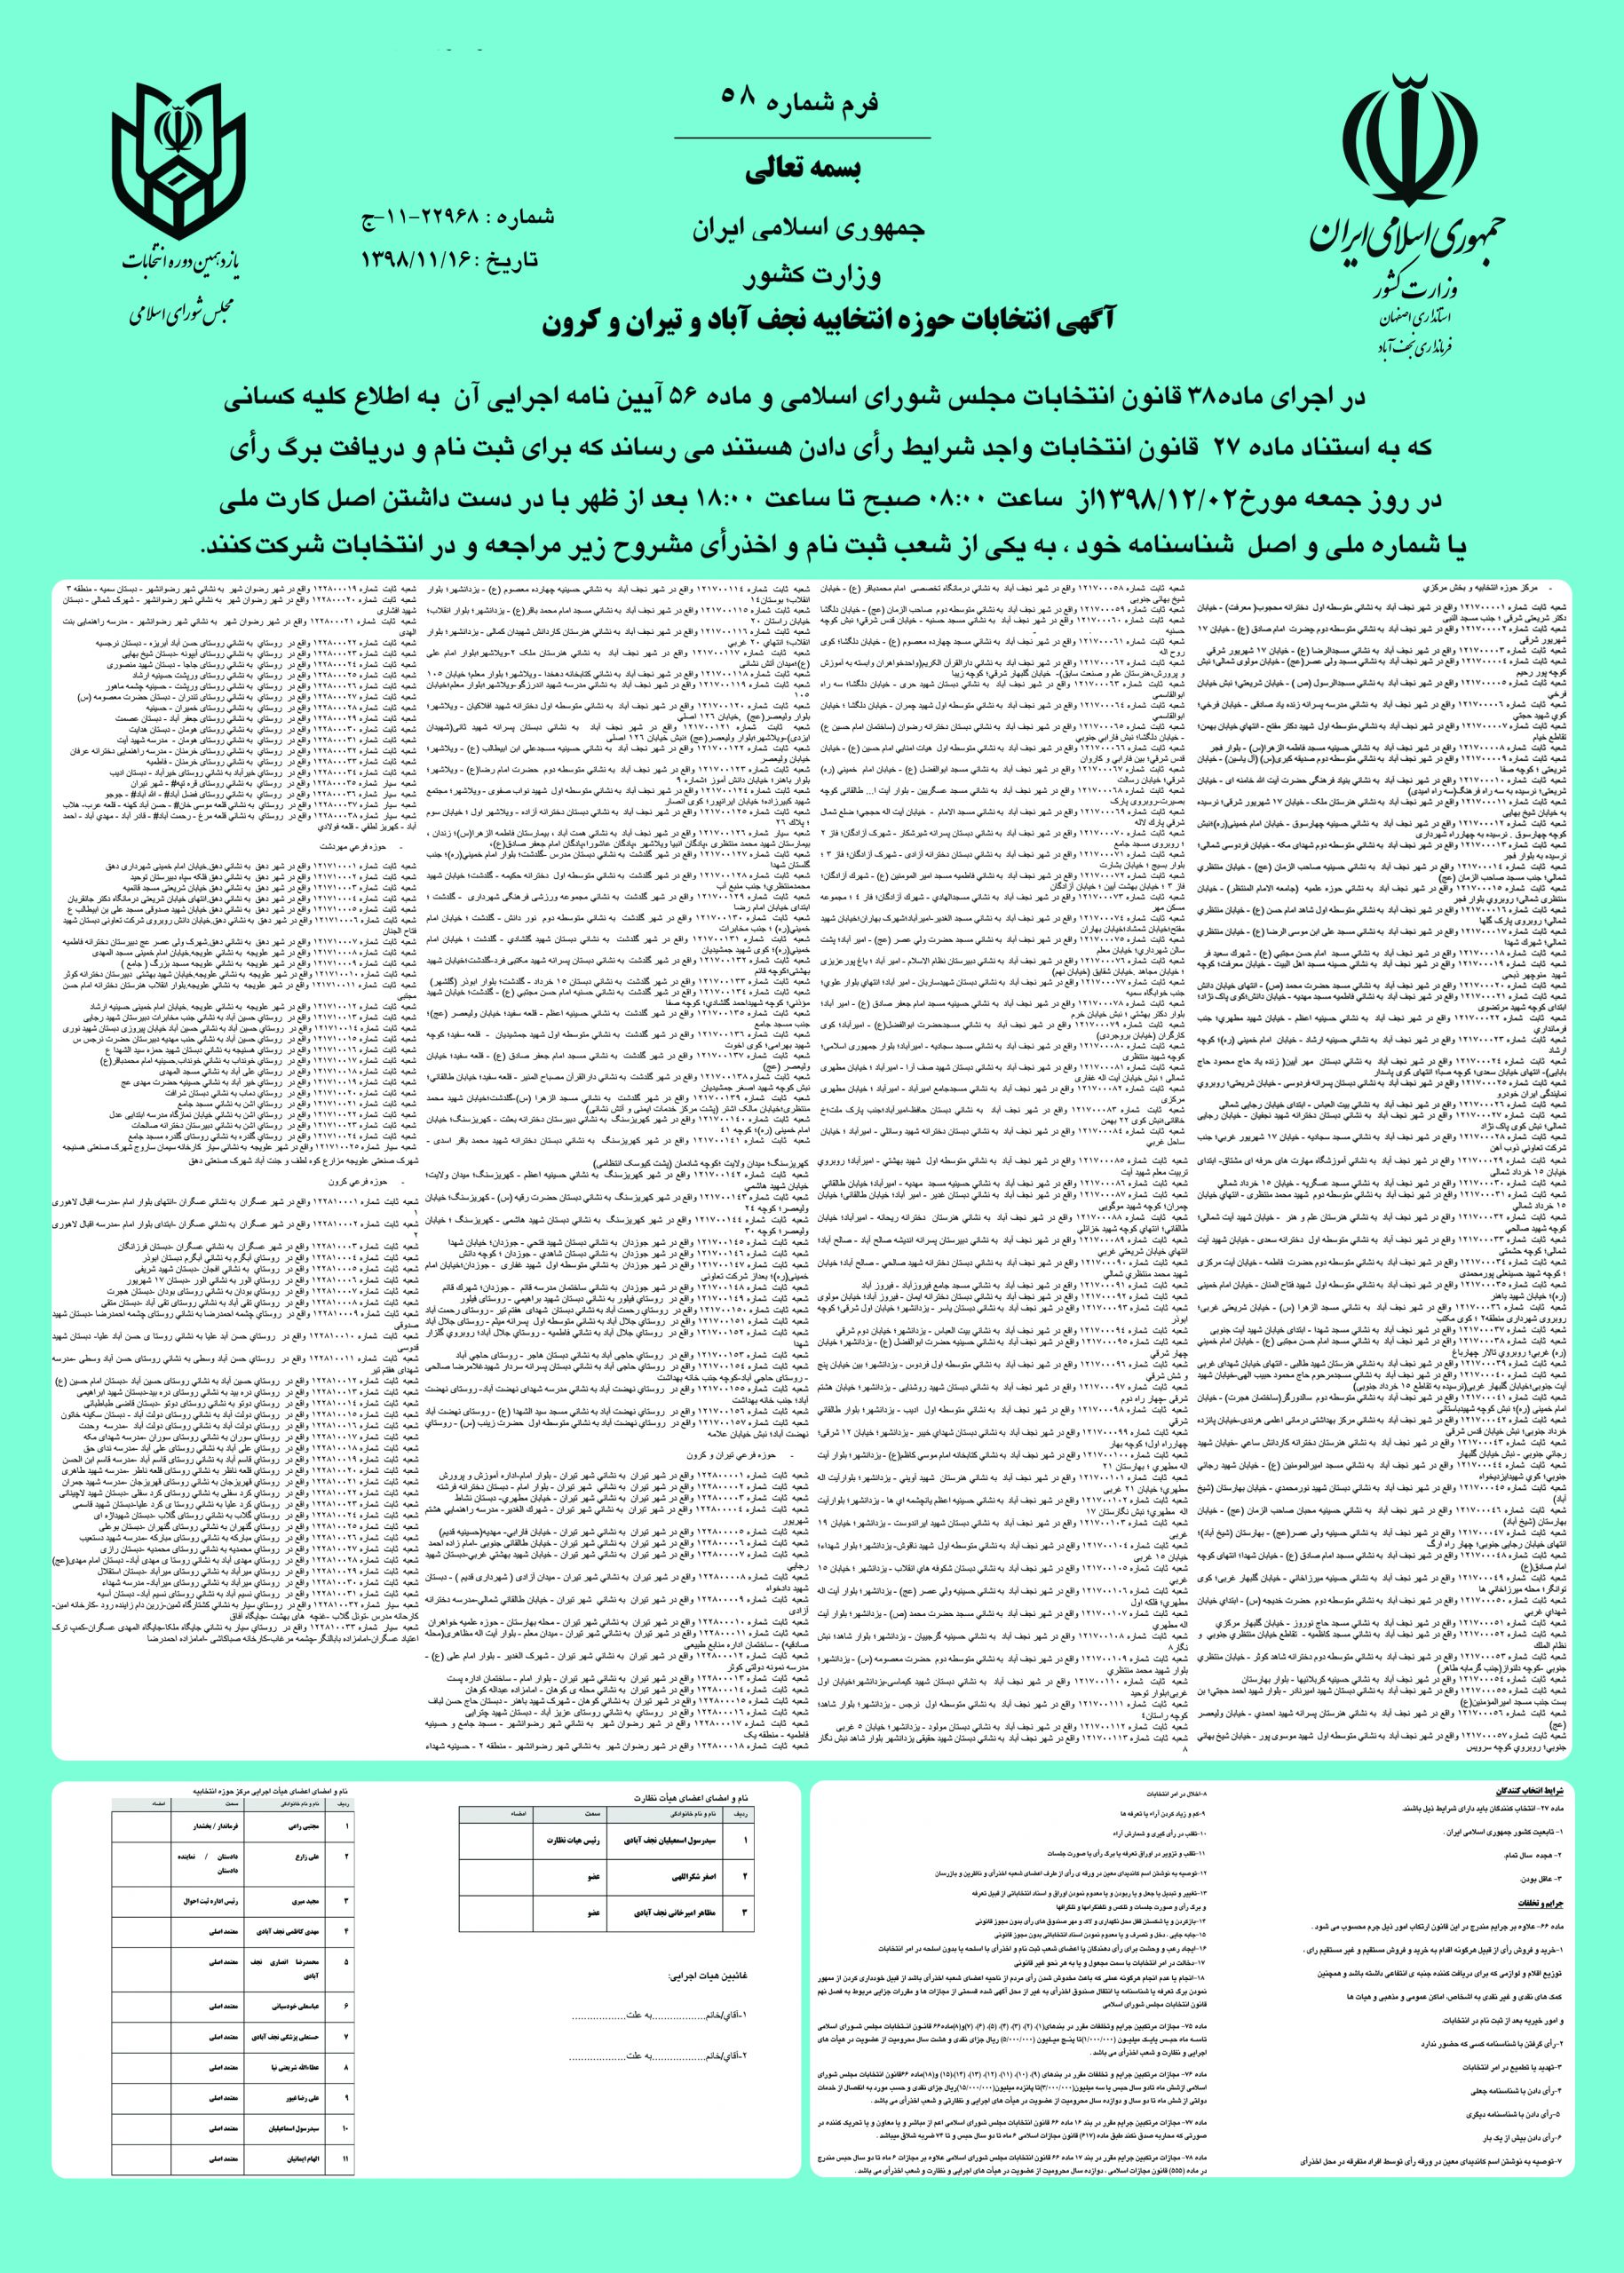 نشانی شعب اخذ رای در نجف آباد+ معرفی اعضای هیات اجرایی و نظارت